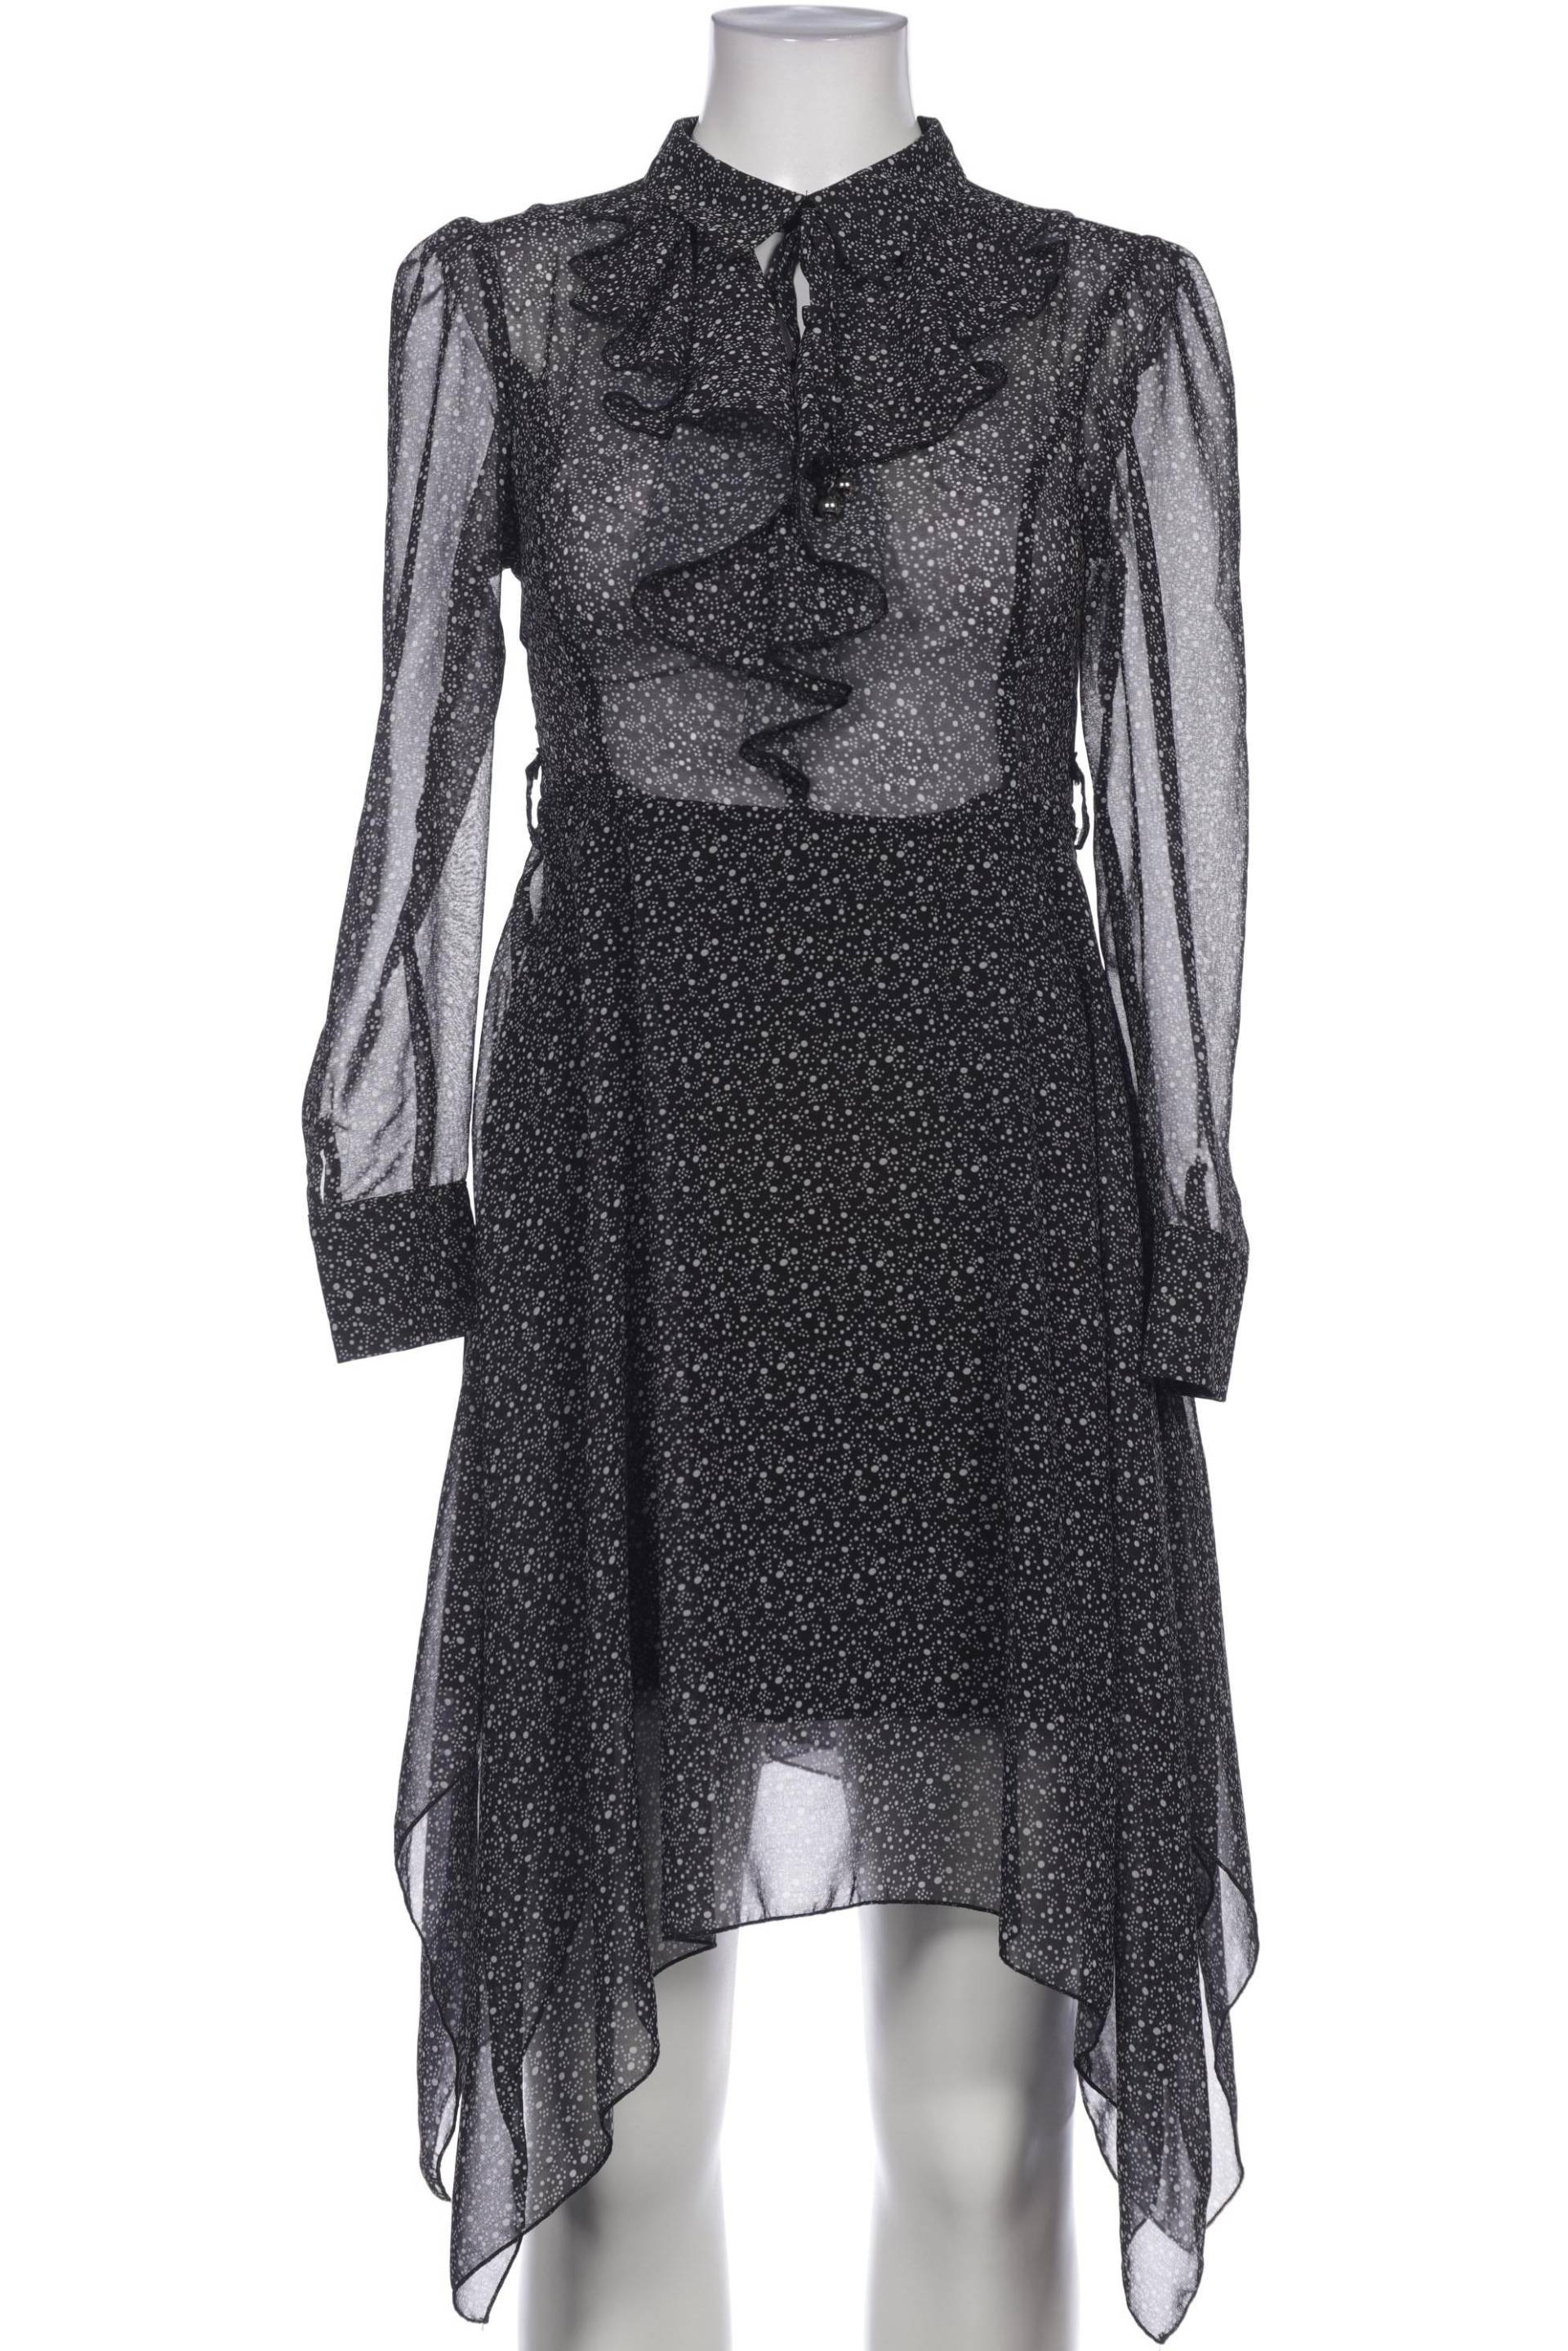 RINASCIMENTO Damen Kleid, schwarz von RINASCIMENTO